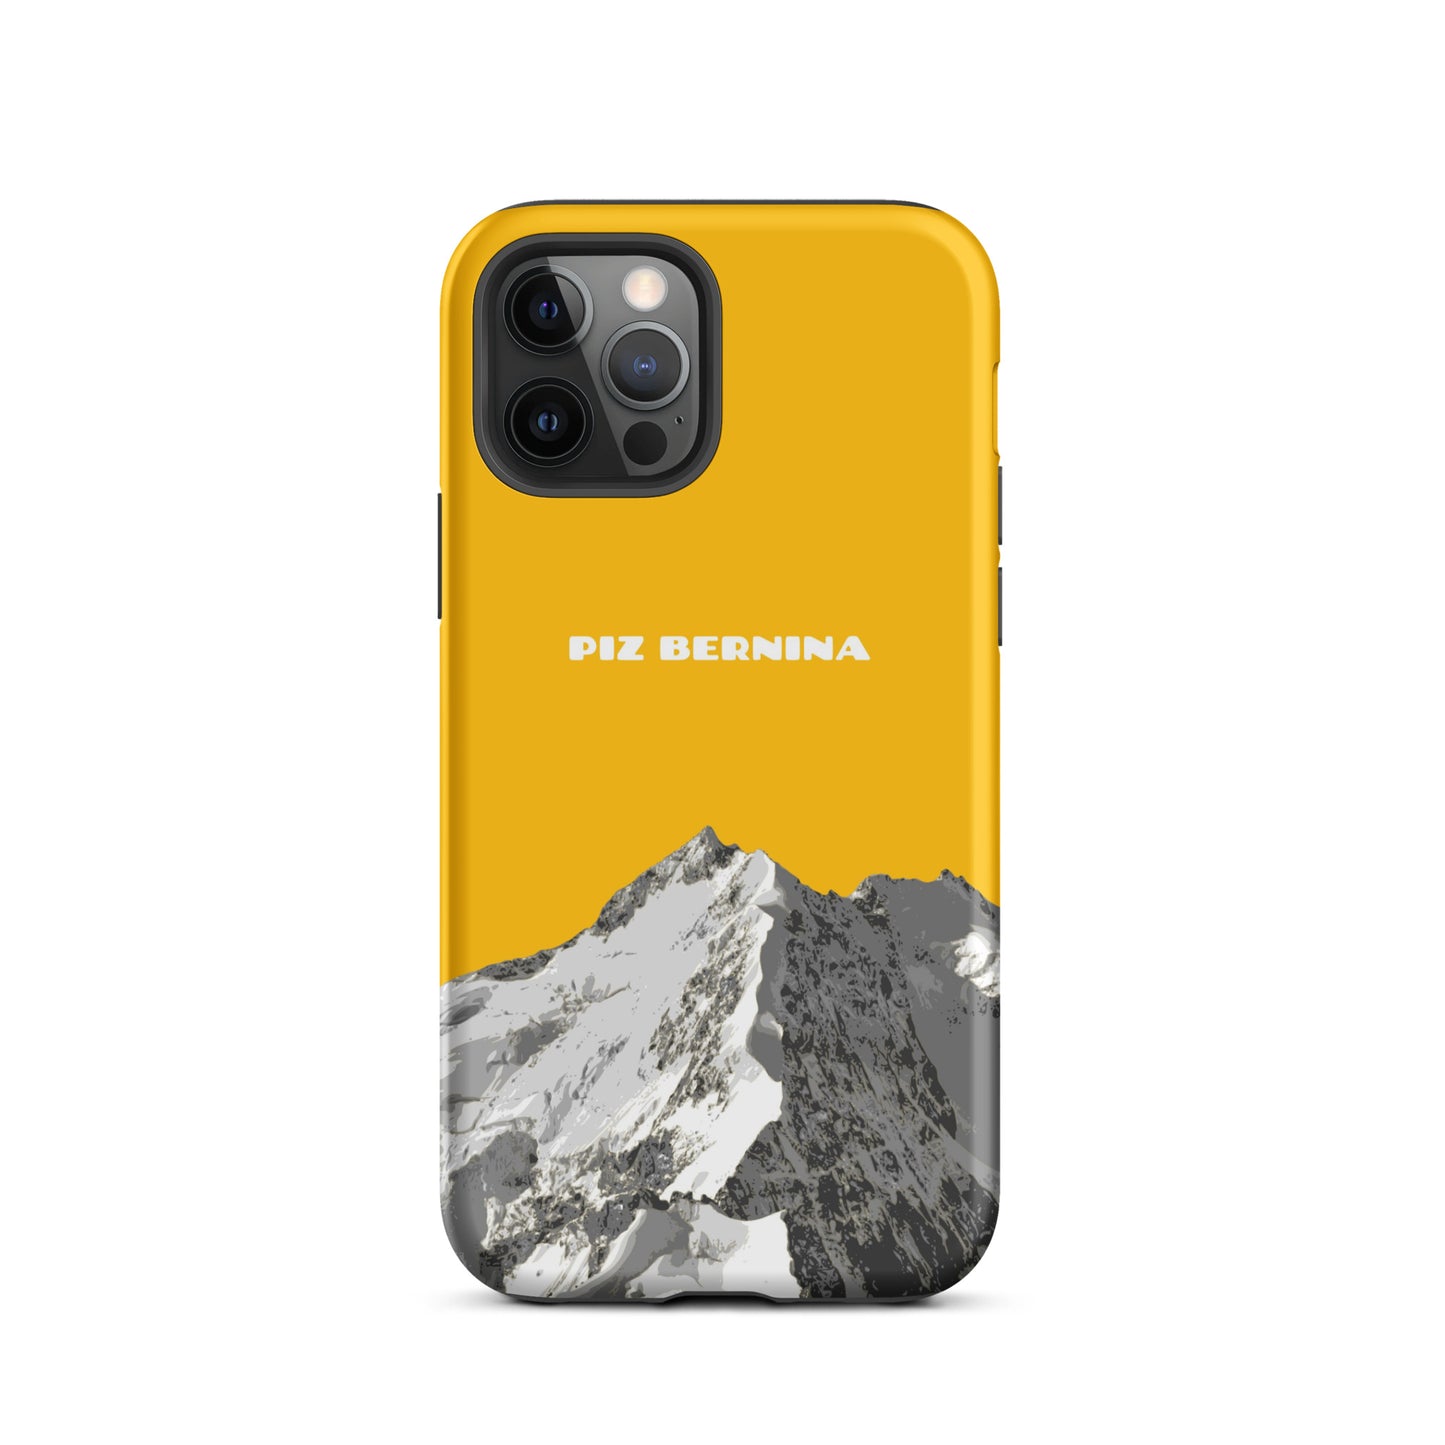 Hülle für das iPhone 12 Pro von Apple in der Farbe Goldgelb, dass den Piz Bernina in Graubünden zeigt.